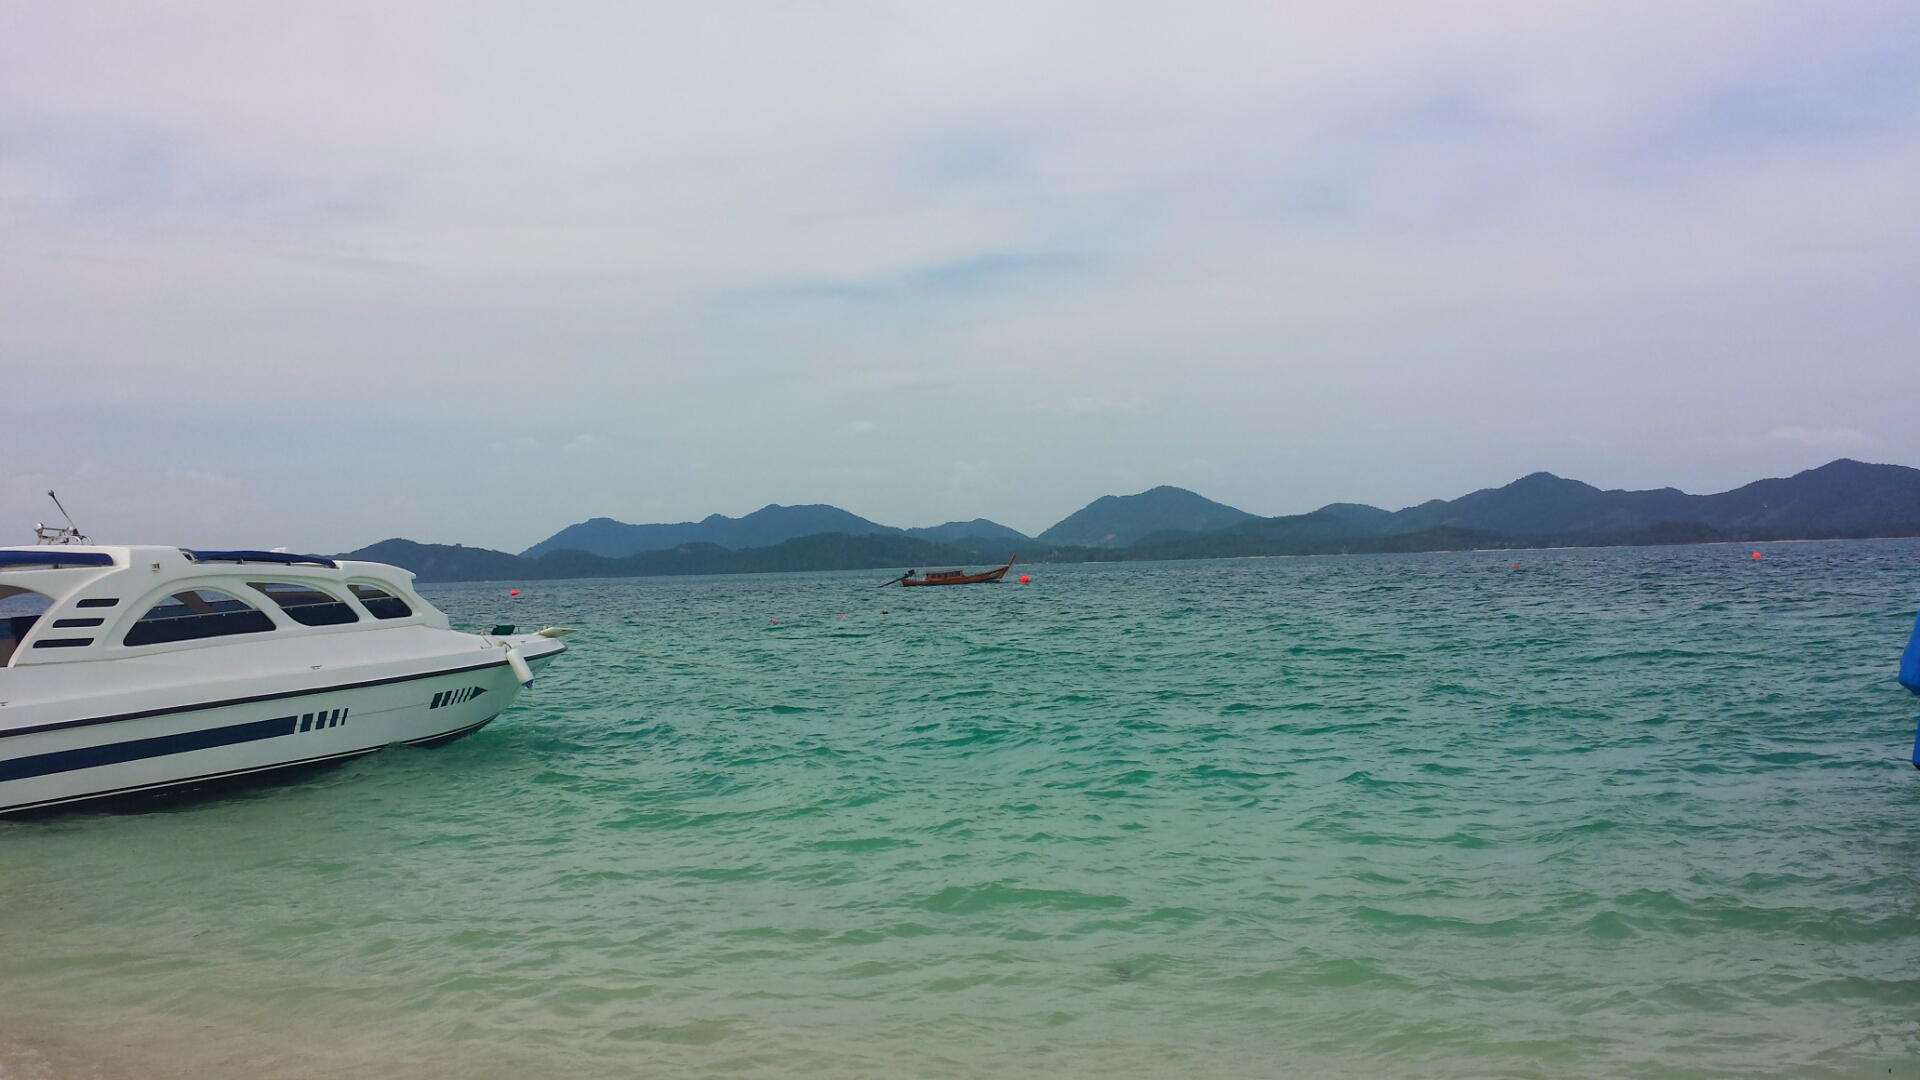 Khai_Islands_Phuket_Thailand